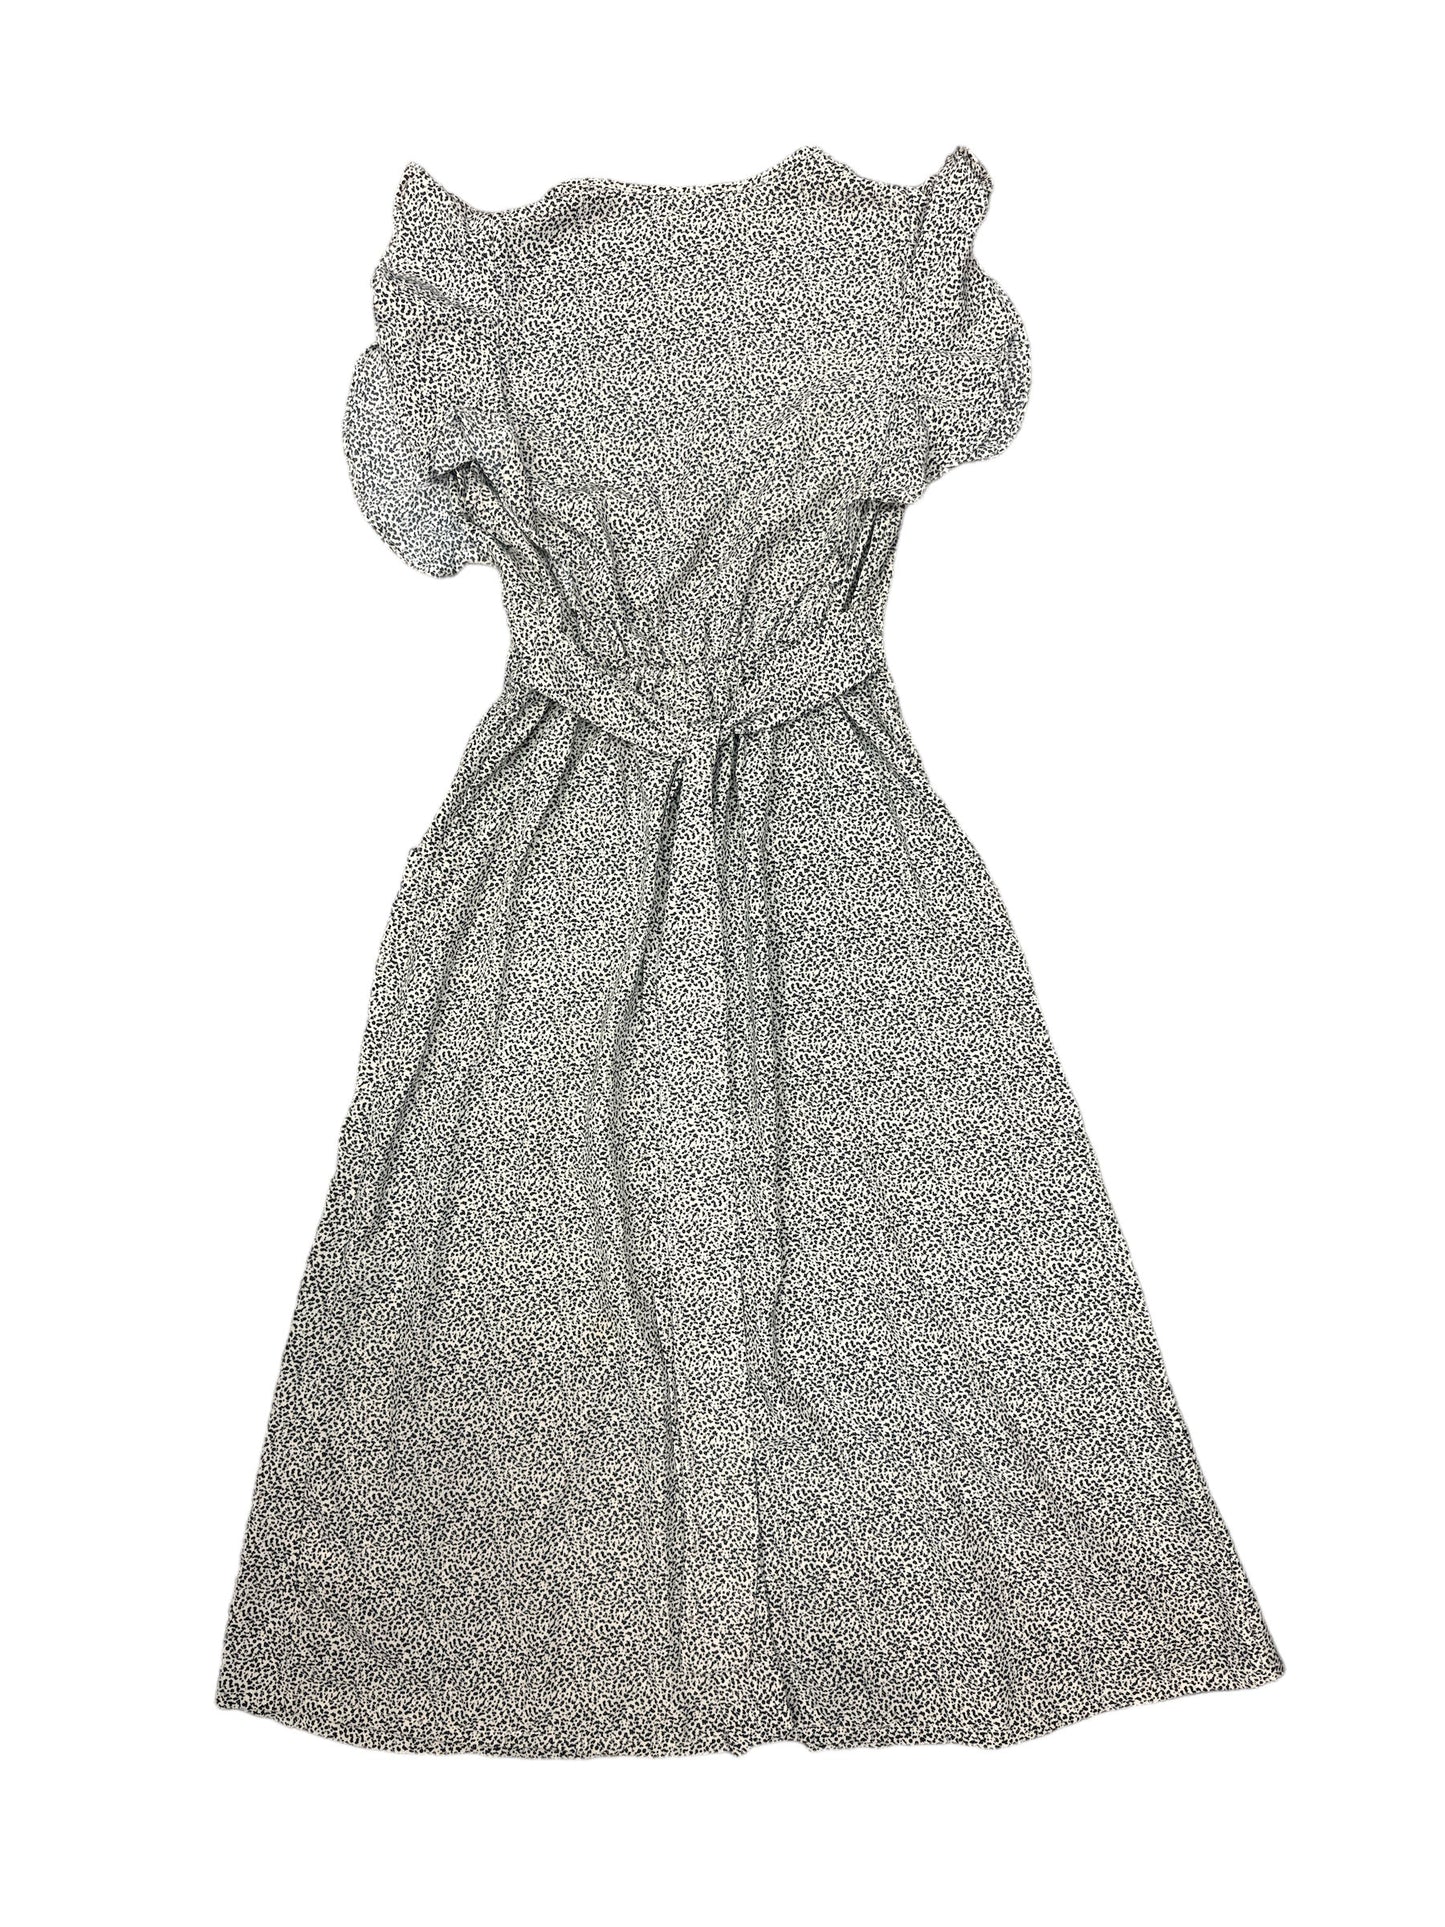 Dress Casual Midi By Sienna Sky  Size: 2